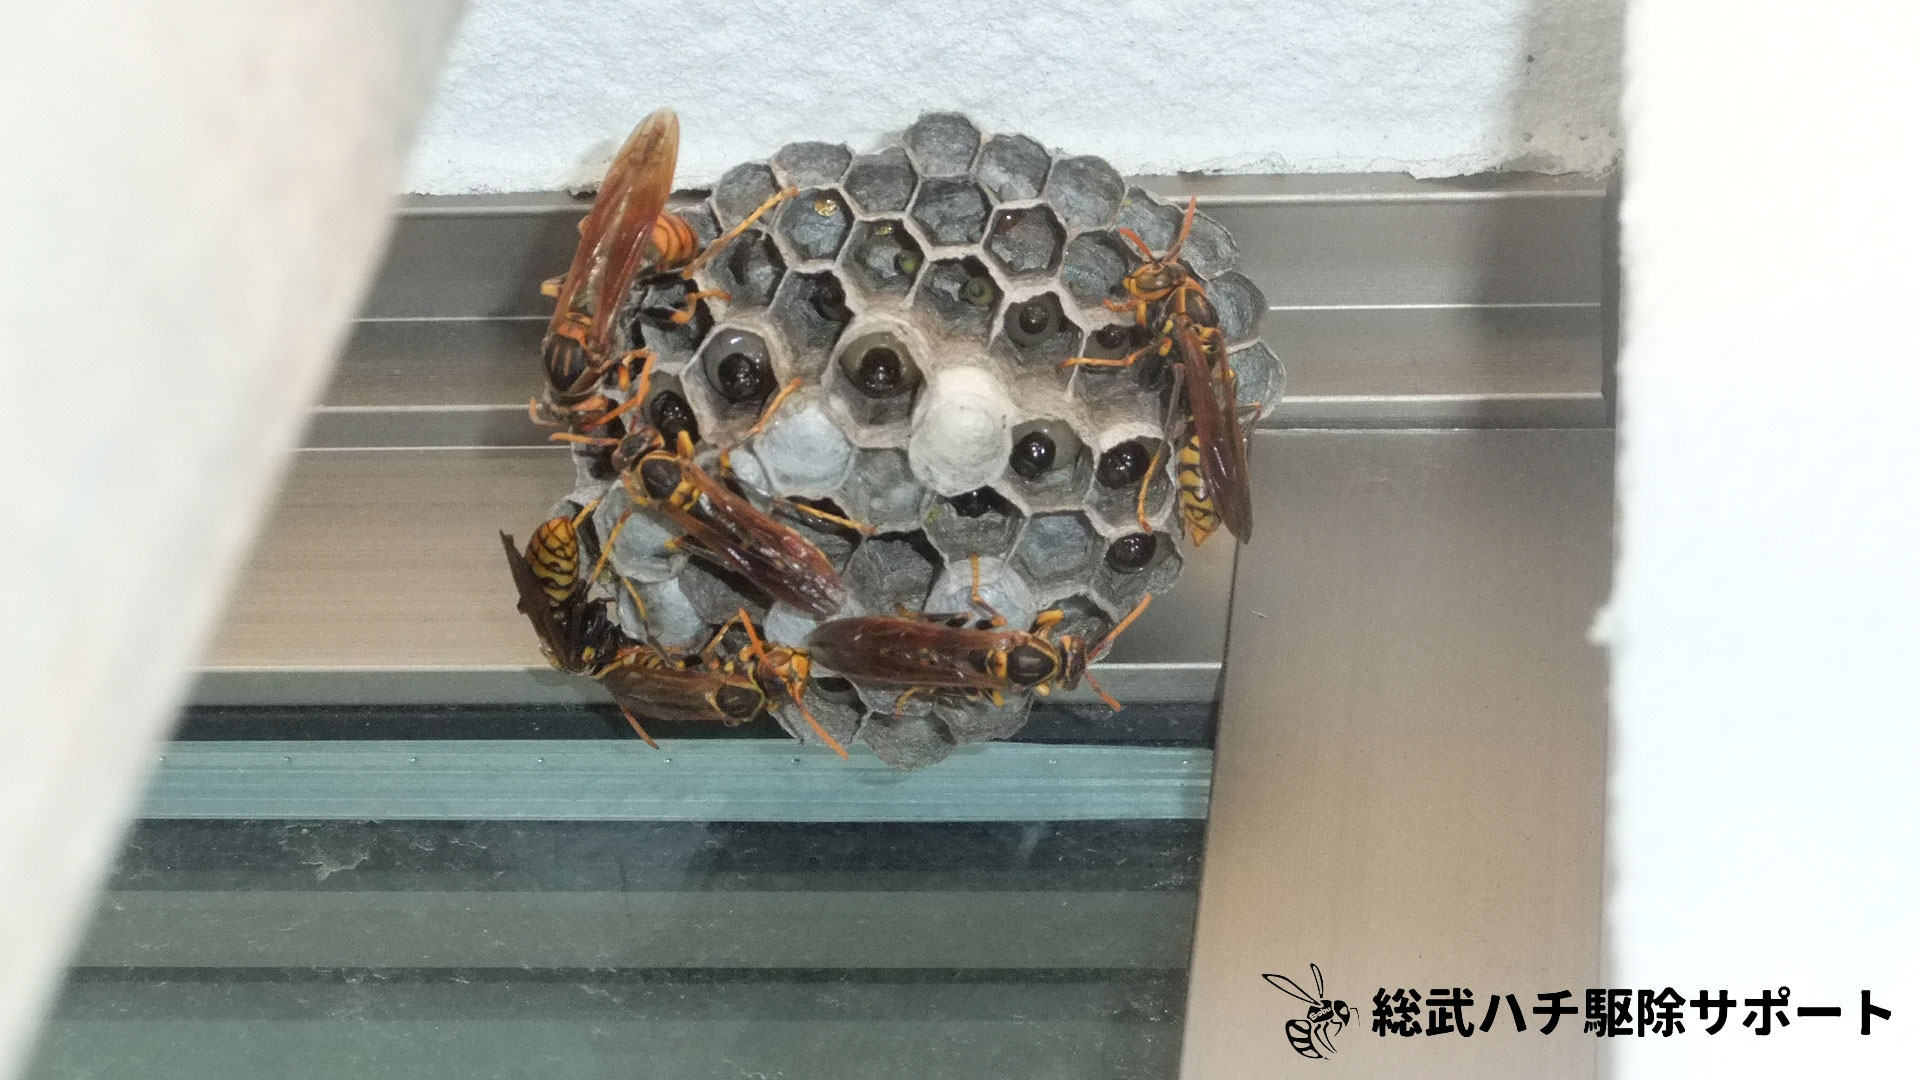 佐倉市でアシナガバチの巣を駆除した様子